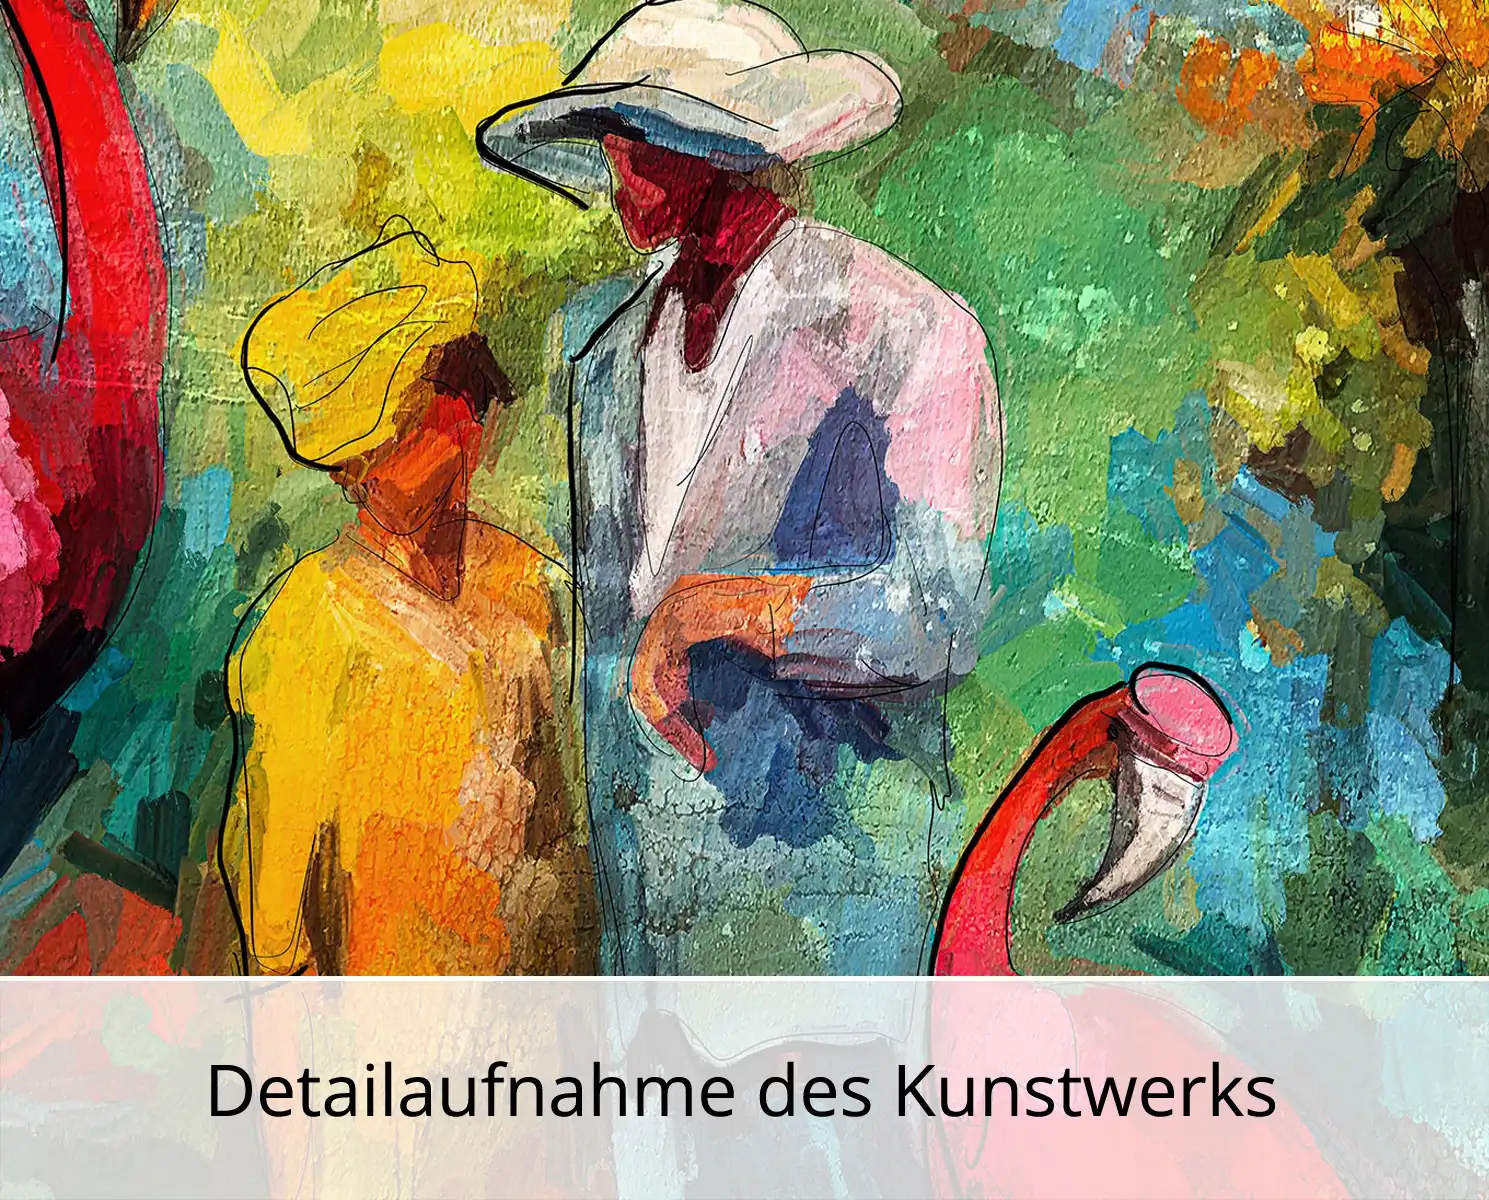 Kunstdruck, signiert: "Paar mit Flamingos", Holger Mühlbauer-Gardemin, Edition, Nr. 1/100